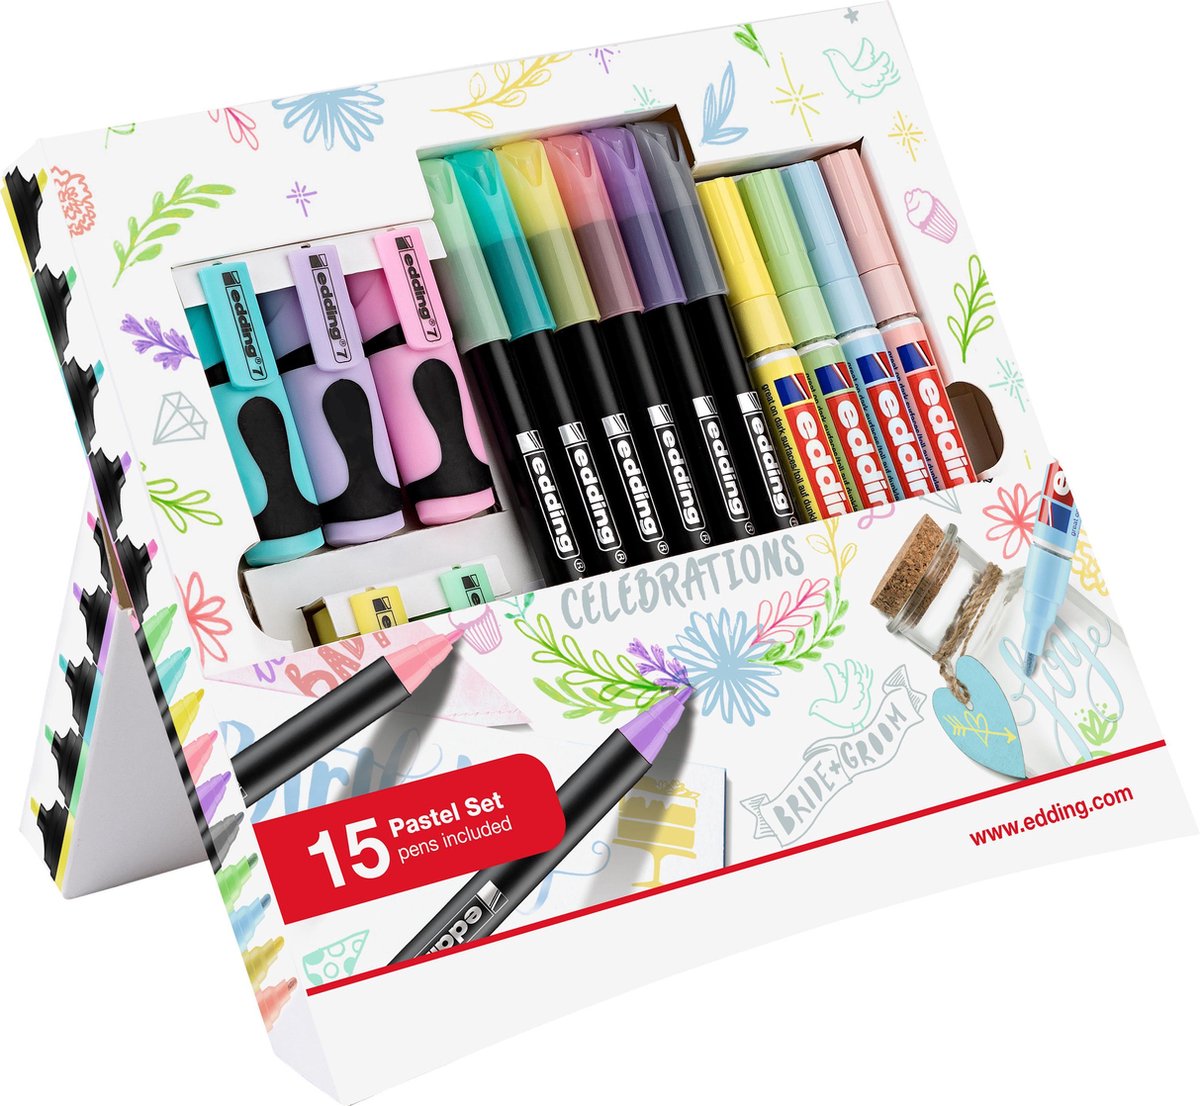 edding alles-in-één Pastel Promotie Set - 15 pastel producten, ideaal om te tekenen